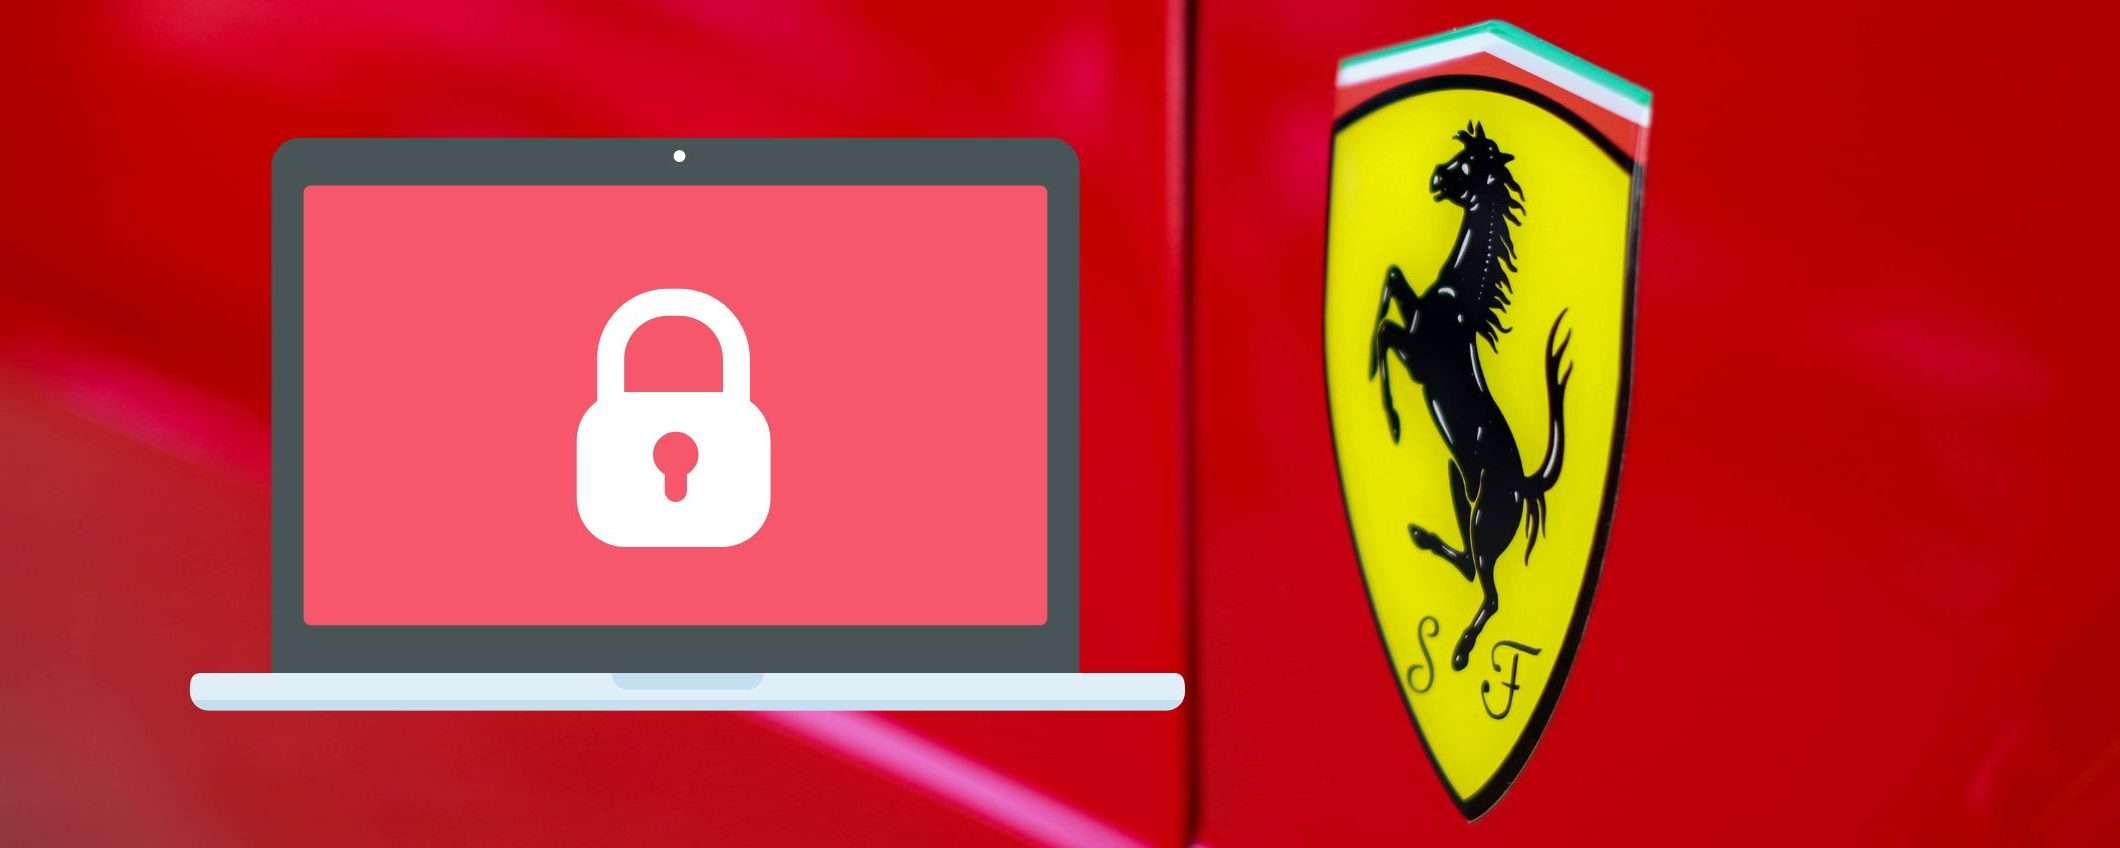 Ferrari sotto attacco: ransomware ruba oltre 7GB di dati